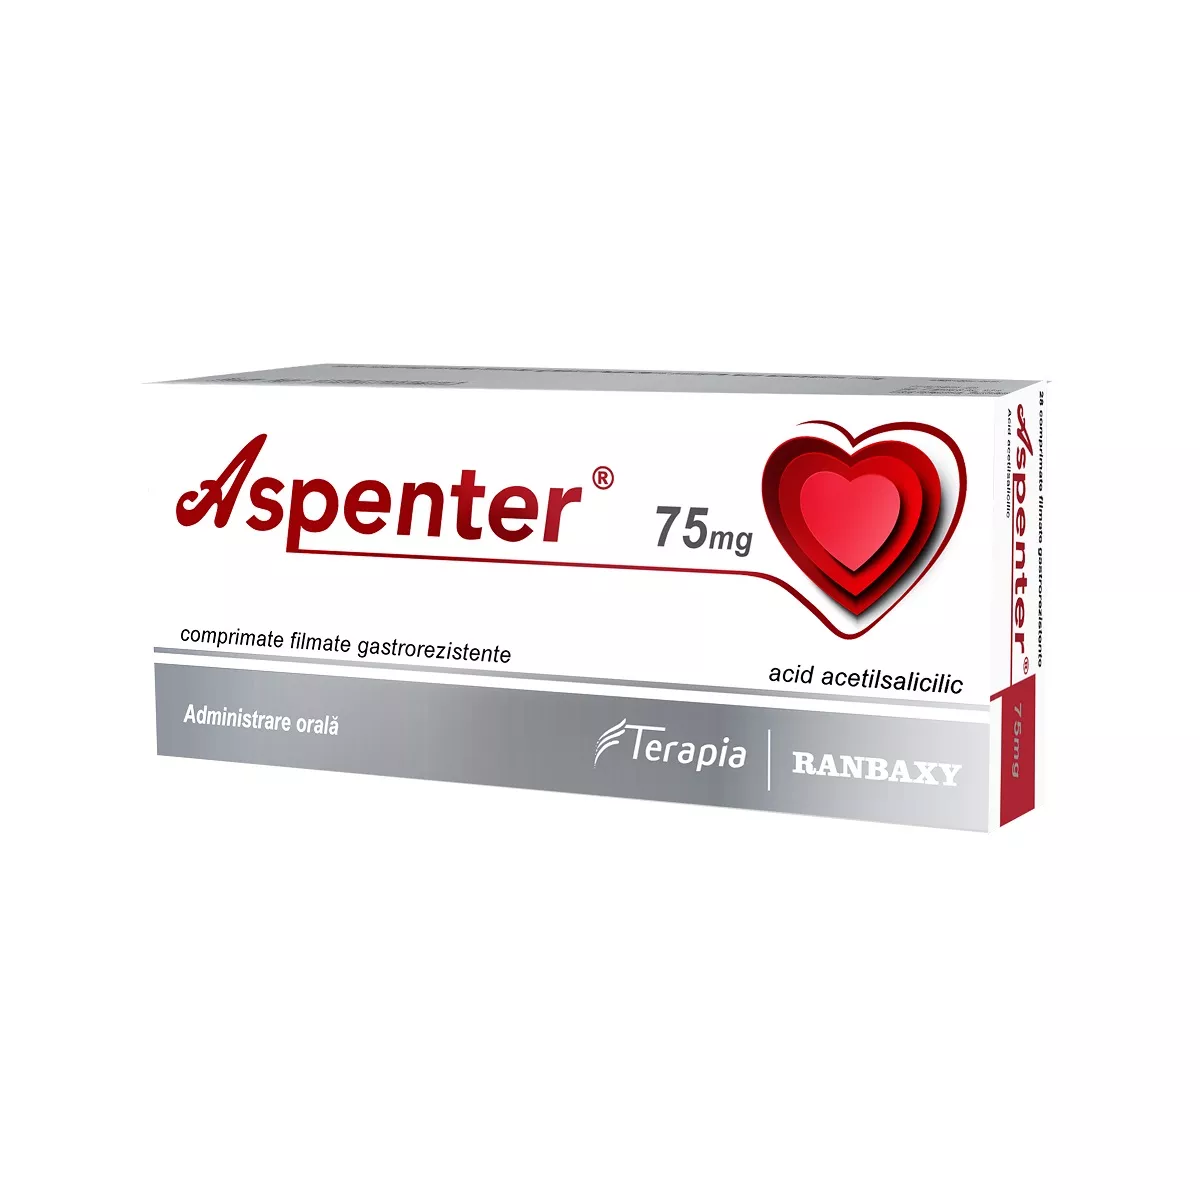 Aspenter, 75 mg, 28 comprimate gastrorezistente, Terapia, [],nordpharm.ro